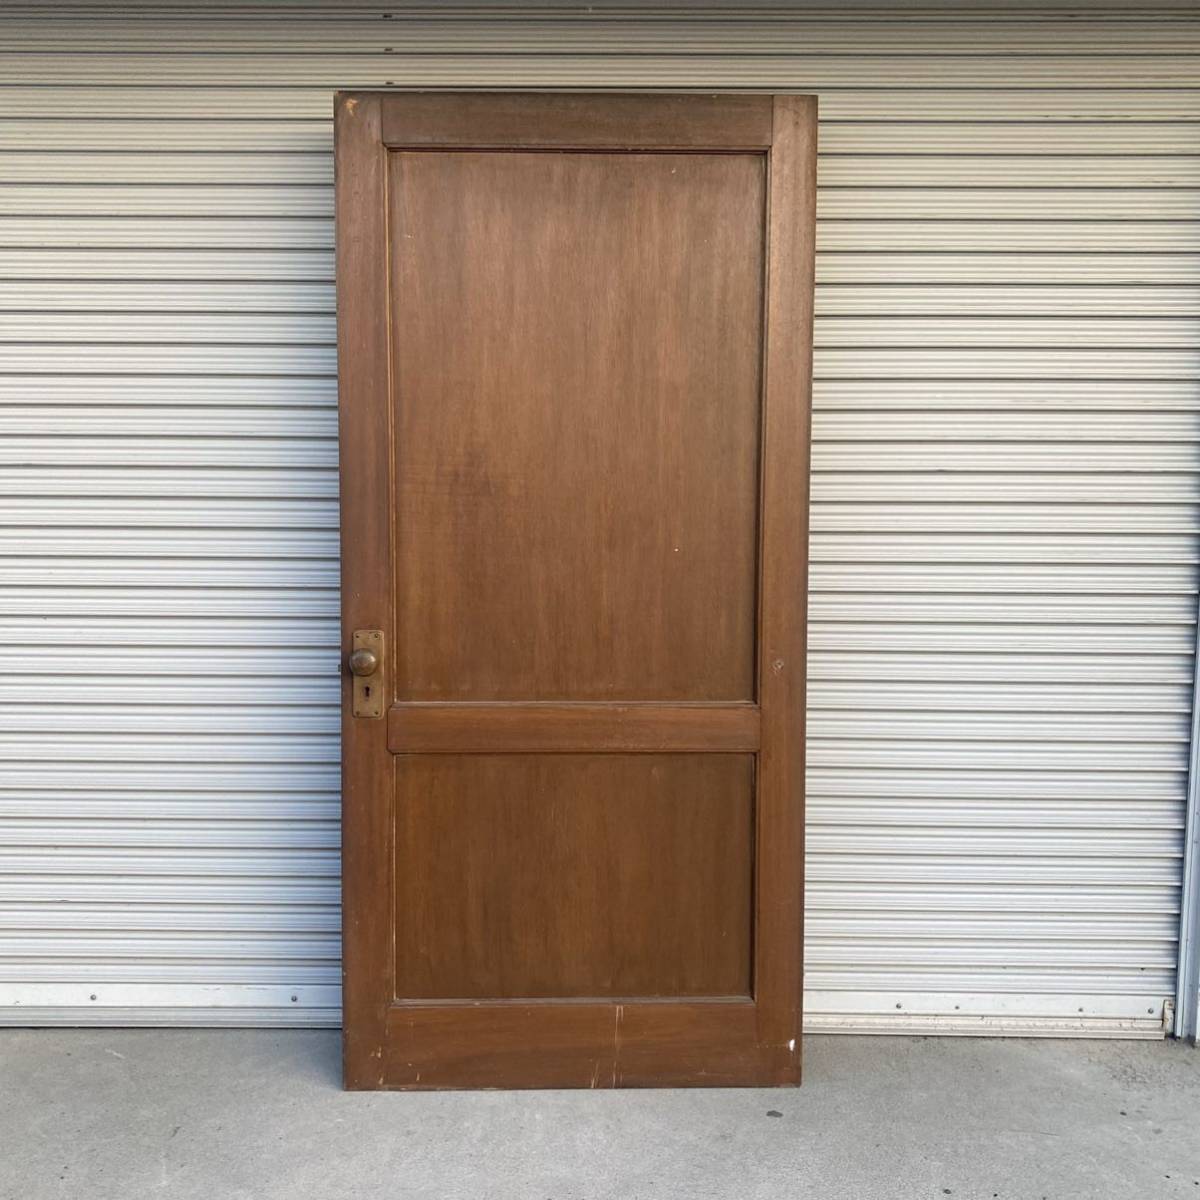 GM8TJ④la one frame. antique door retro store furniture old Japanese-style house ... door era fittings entranceway door warehouse door 